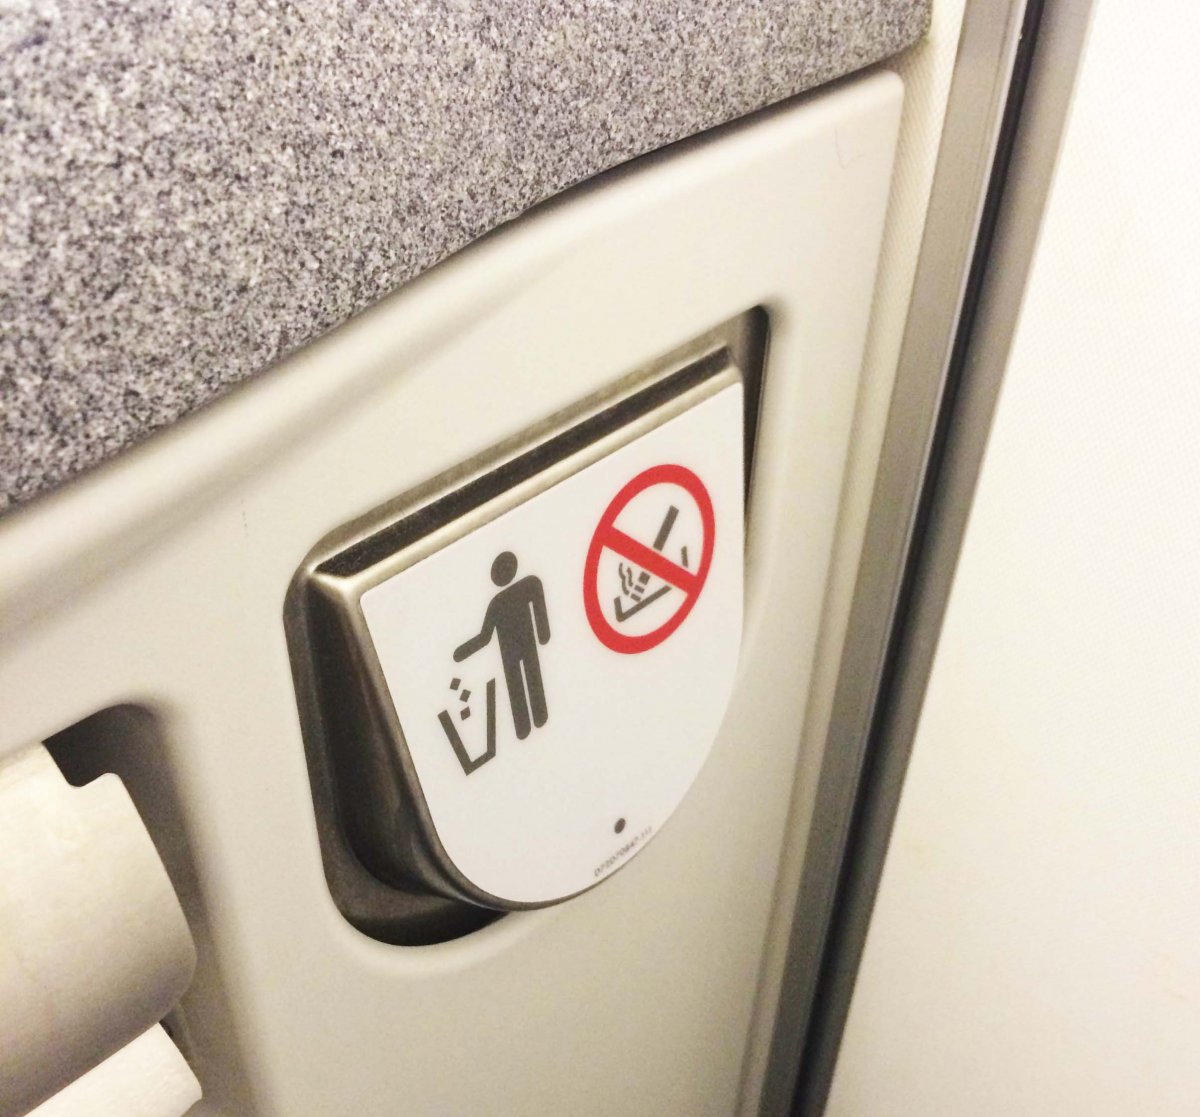 Aneh, ada peringatan dilarang merokok dalam pesawat tapi ada asbak